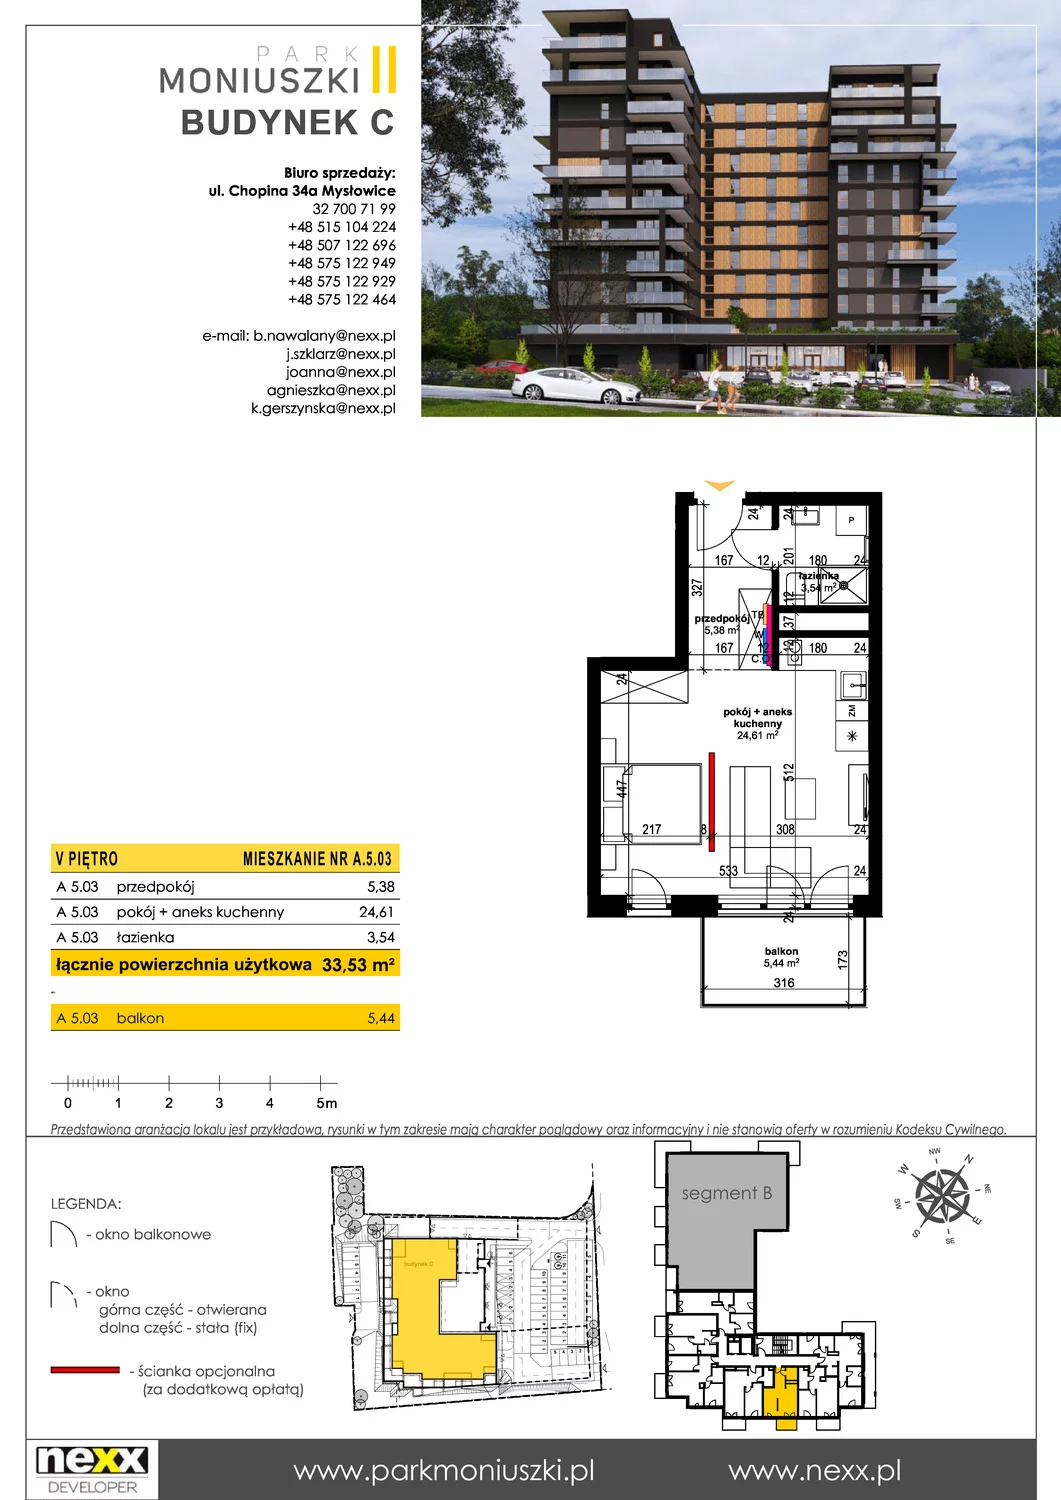 Mieszkanie 33,53 m², piętro 5, oferta nr A 5.03, Osiedle Park Moniuszki, Mysłowice, ul. Okrzei / Wielka Skotnica